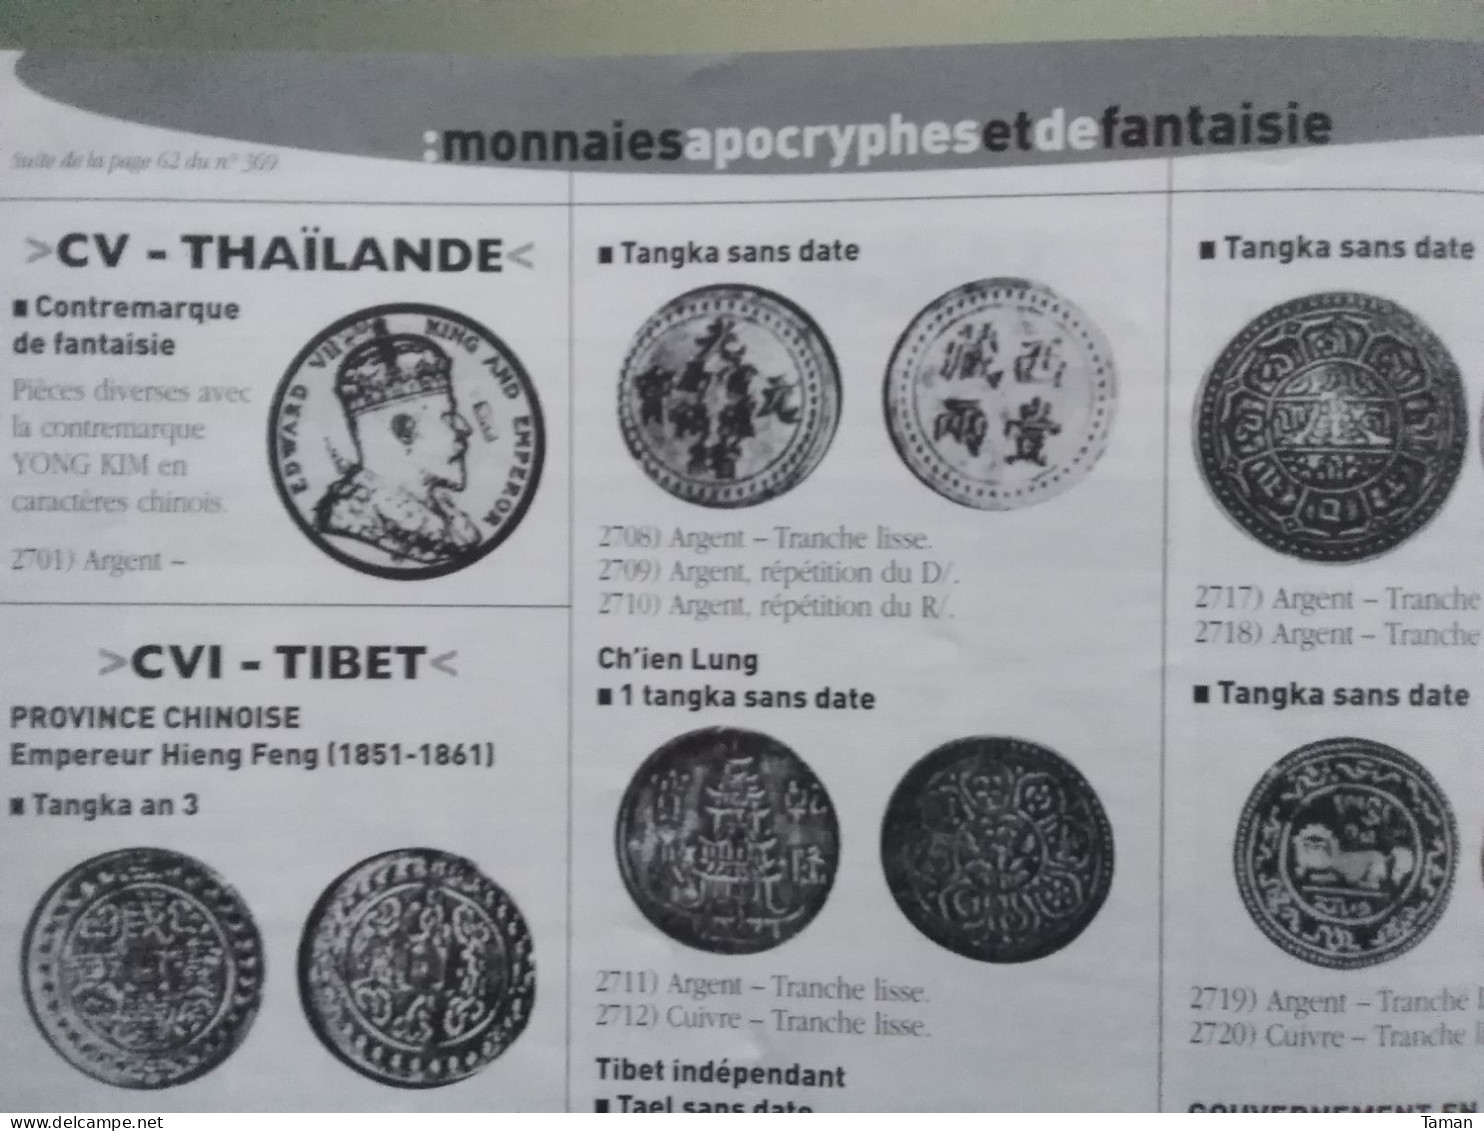 Numismatique & change - Cabinet des médailles Asie - Empereurs romains - Pau - Napoléon en or - Joly graveur